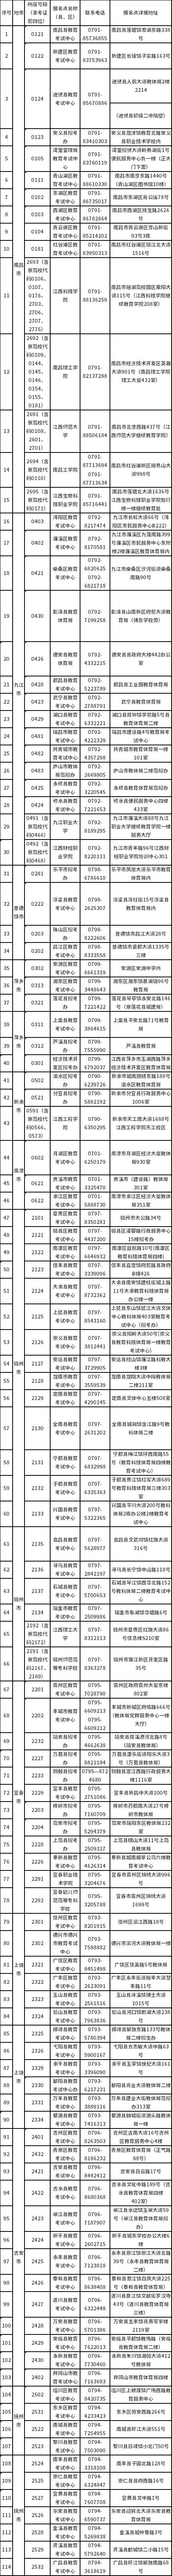 江西省自学考试报名点（初审单位）联络表